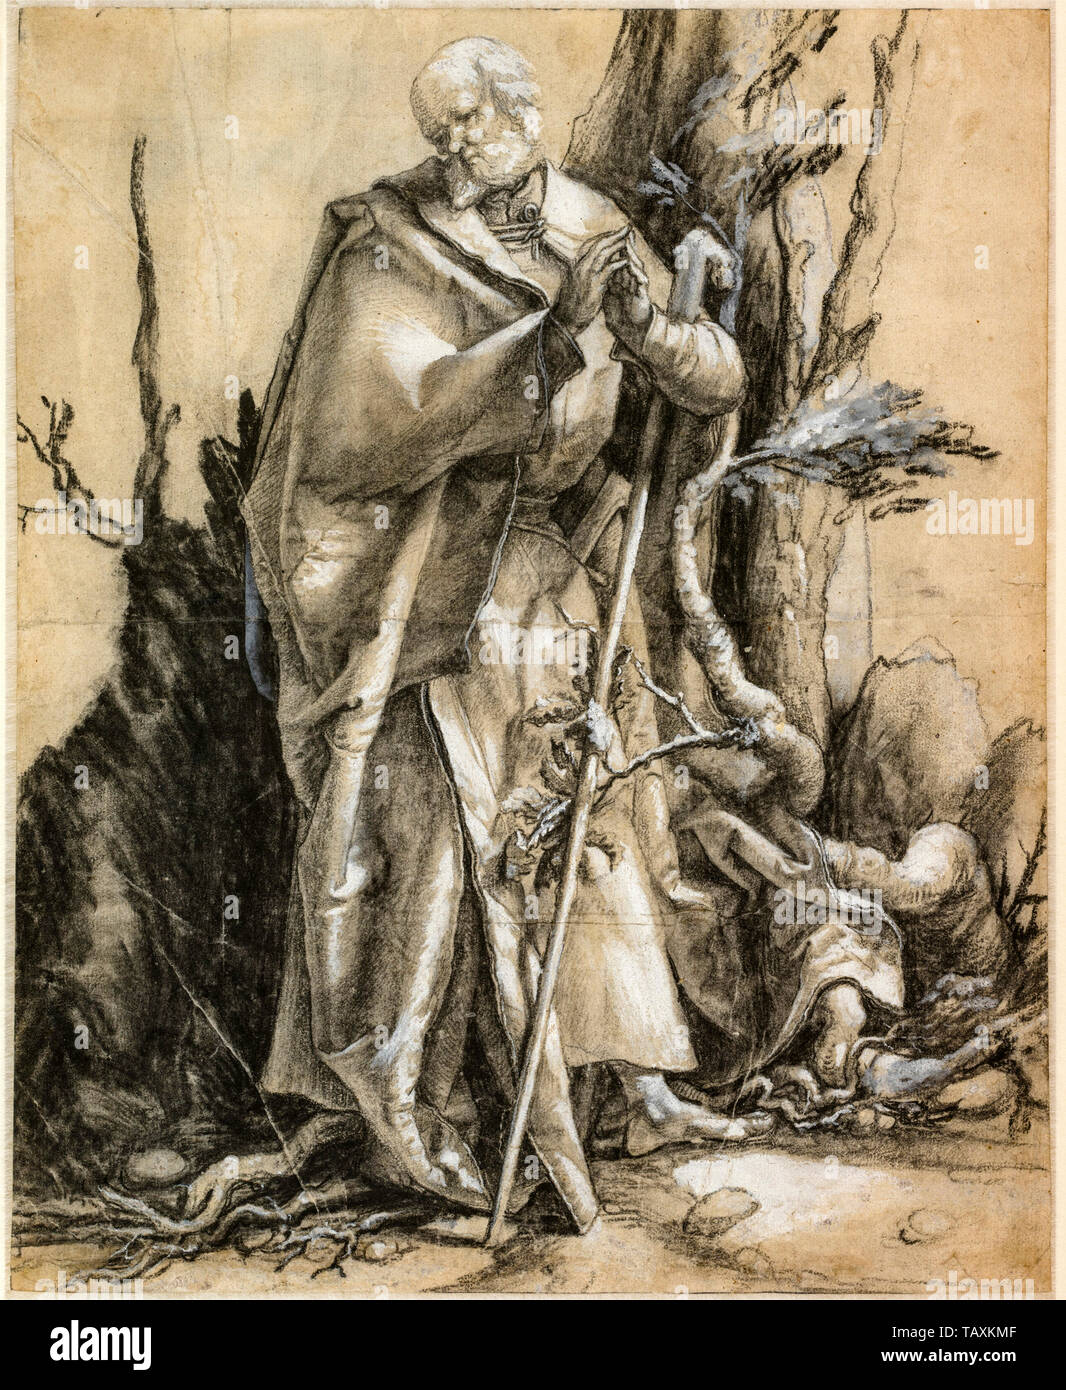 Albrecht Dürer, bärtigen Heiligen in einem Wald, Zeichnung, ca. 1516 Stockfoto